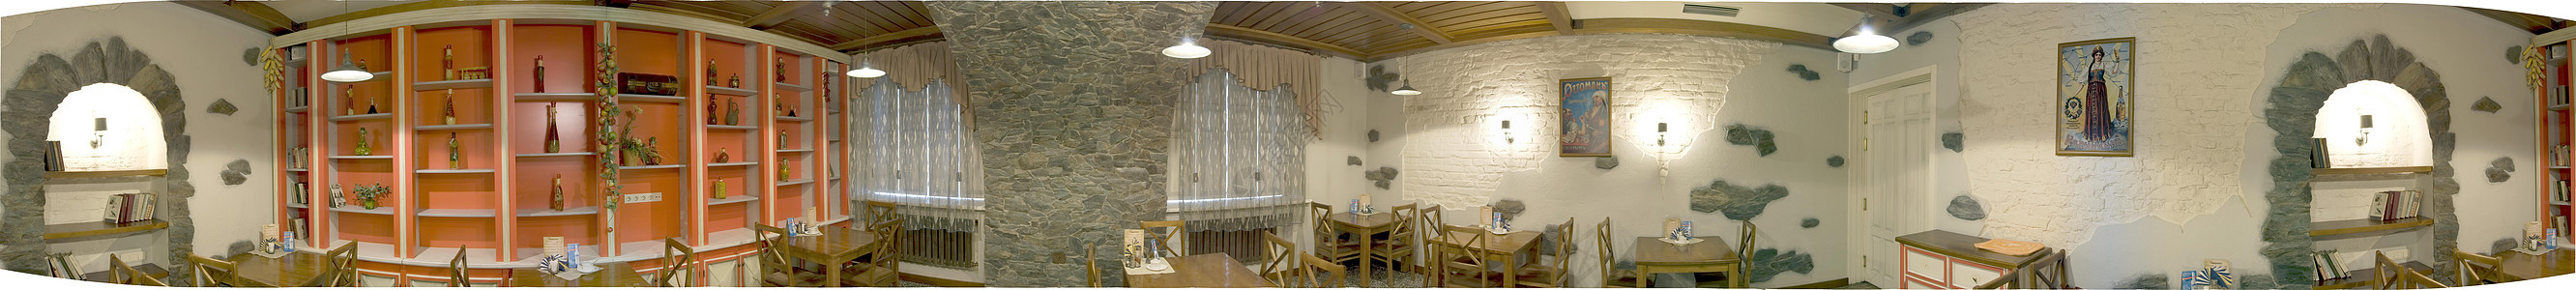 餐厅大厅柱子家具风格环境装饰桌子窗帘盘子服务奢华图片